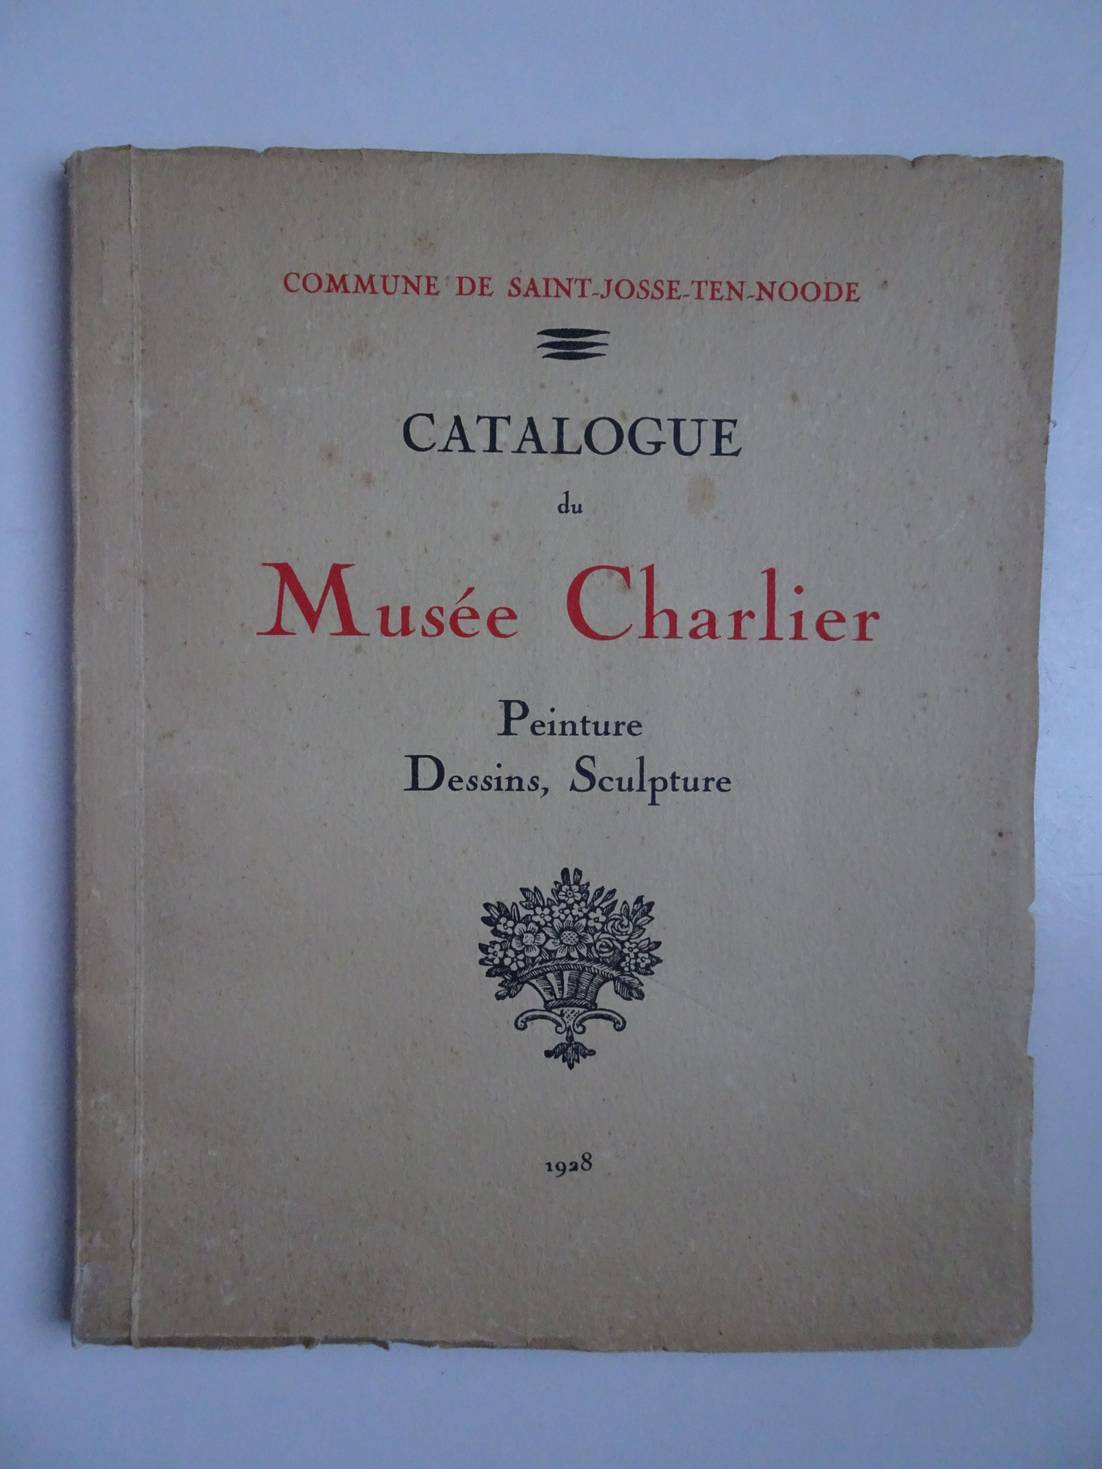 -. - Catalogue du Muse Charlier. Peinture, dessins, sculpture. Commune de Saint-Josse-ten-Noode.